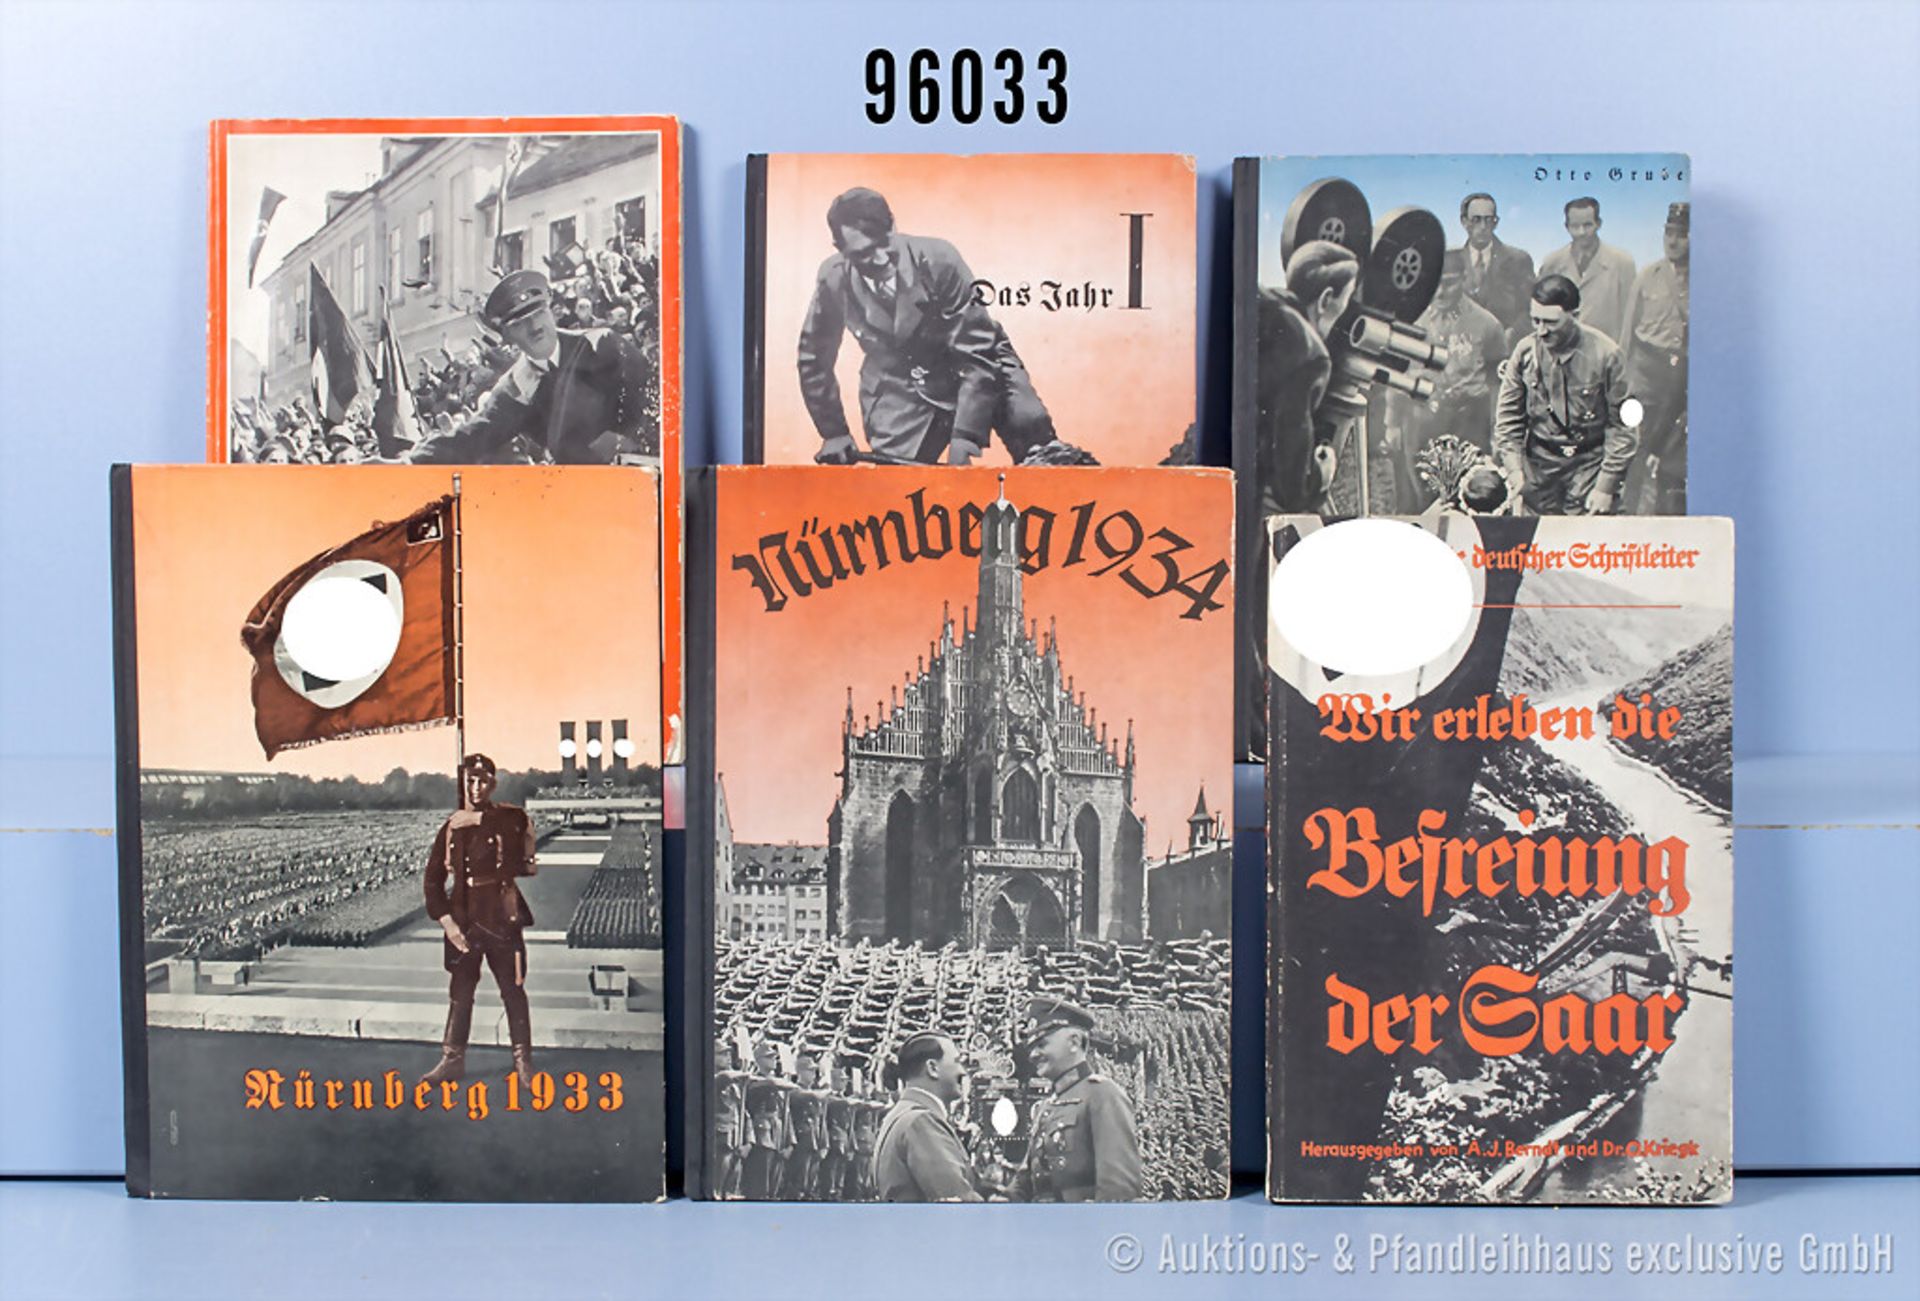 Konv. 6 Bücher 3. Reich "Nürnberg 1933", "Nürnberg 1934", "Das Jahr I", "Volk und ...